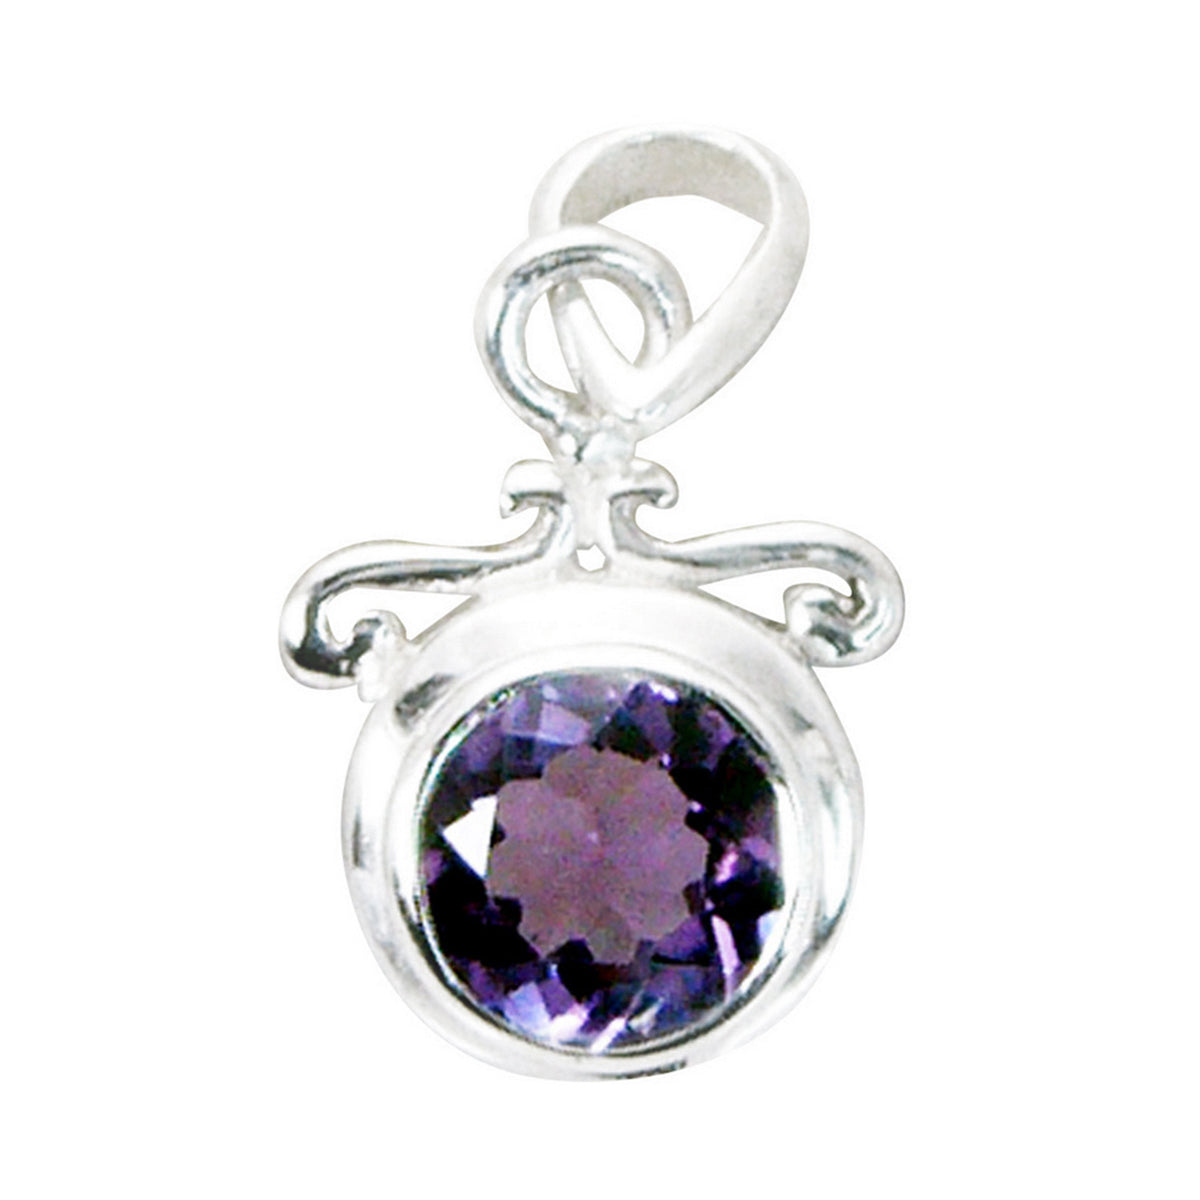 Riyo magnifique pierre précieuse ronde à facettes améthyste violette pendentif en argent sterling 953 cadeau d'anniversaire